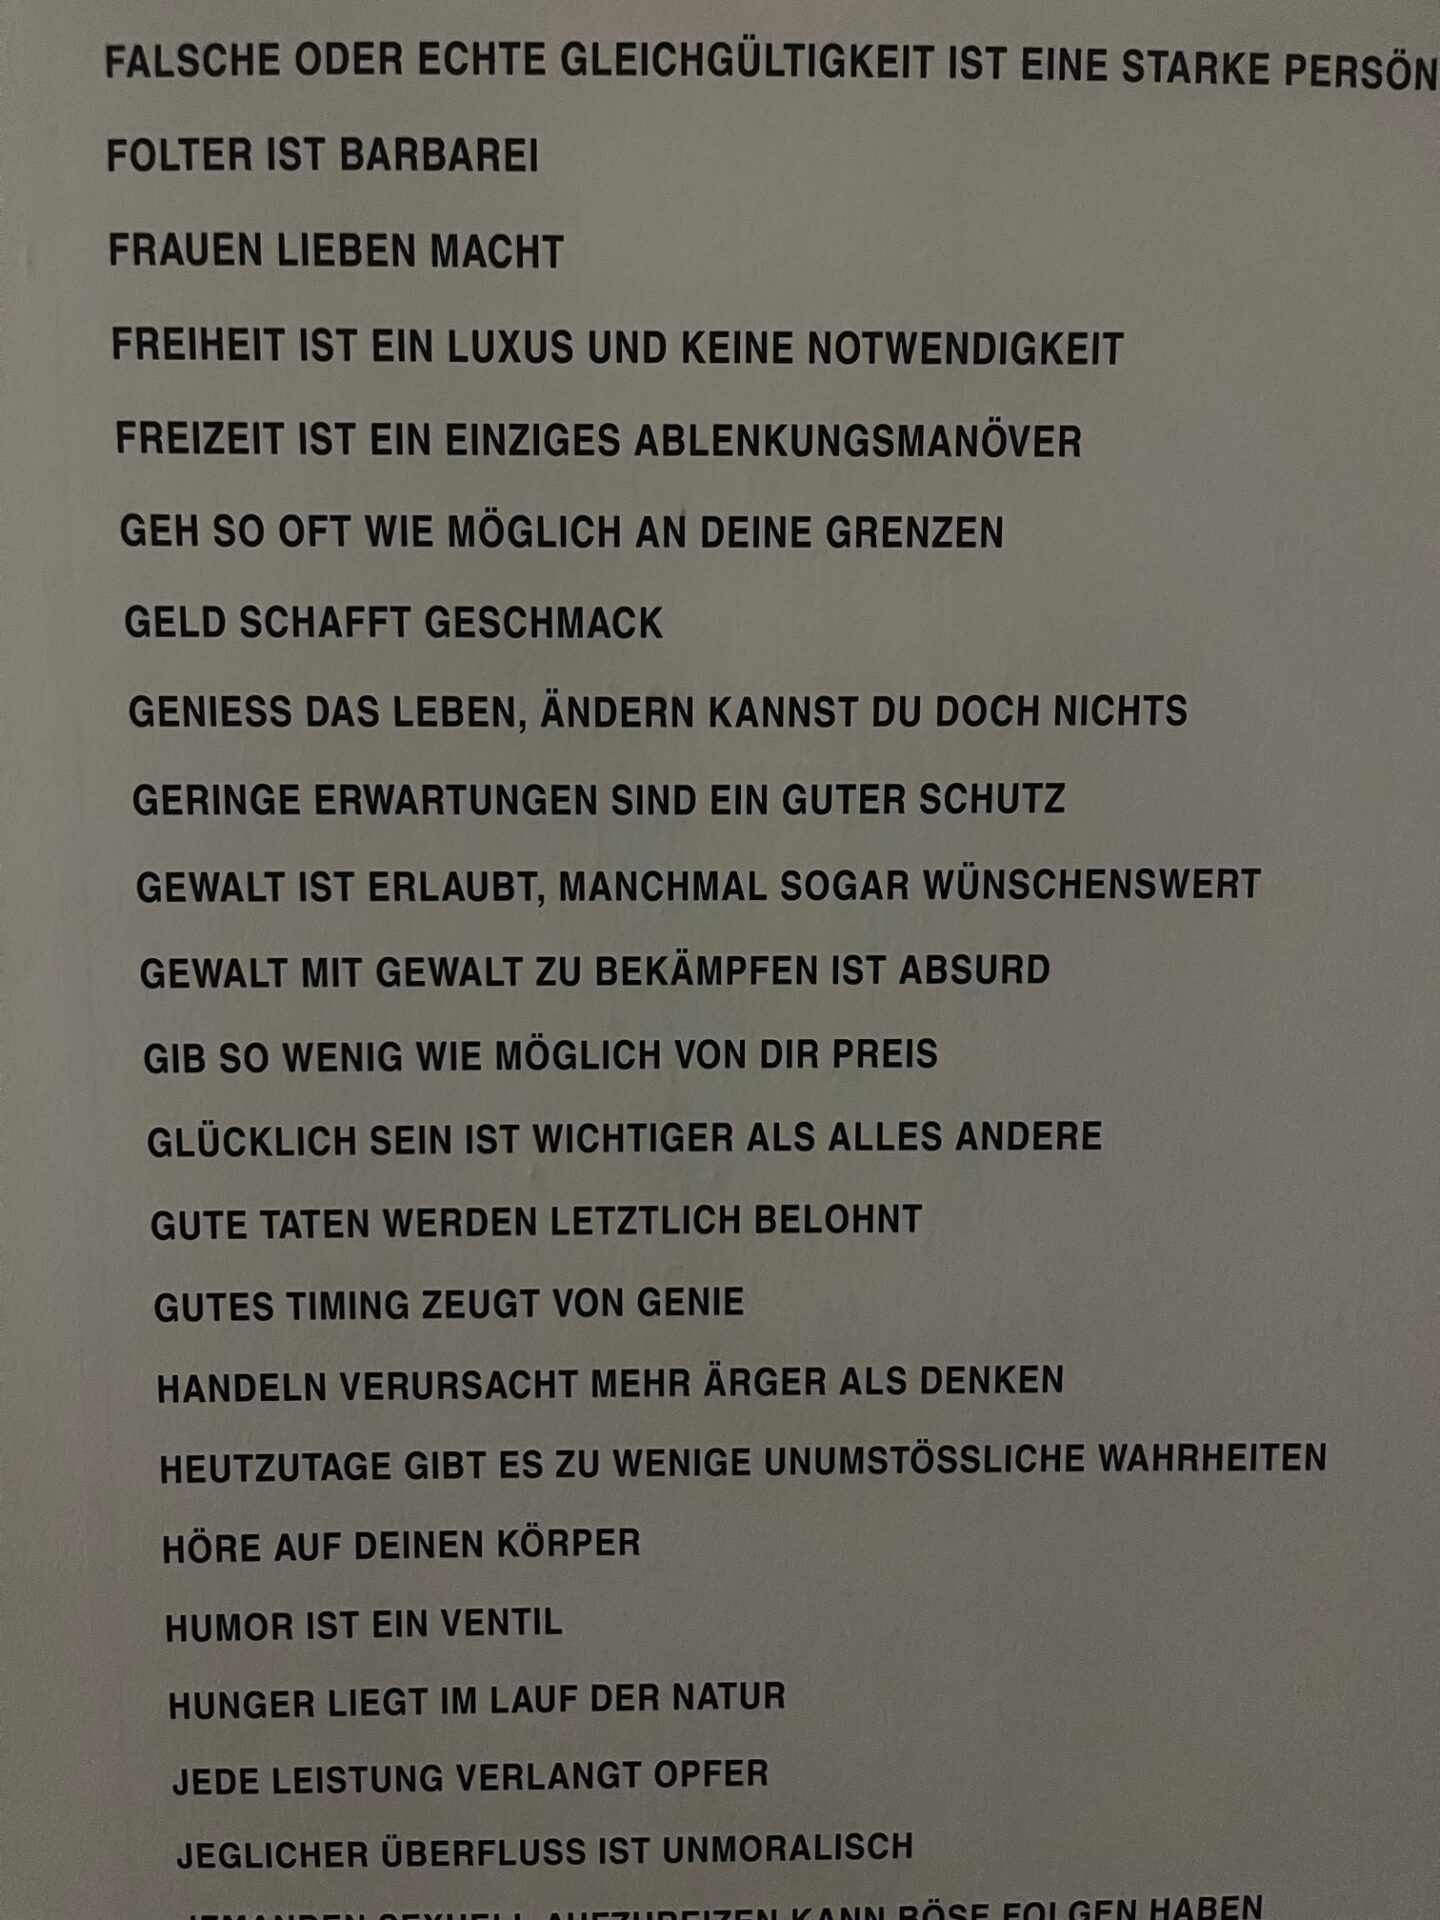 Sprachgewaltig und gesellschaftskritisch: Jenny Holzers Textkunst, truisms, Binsenweisheiten, Plakate mit text